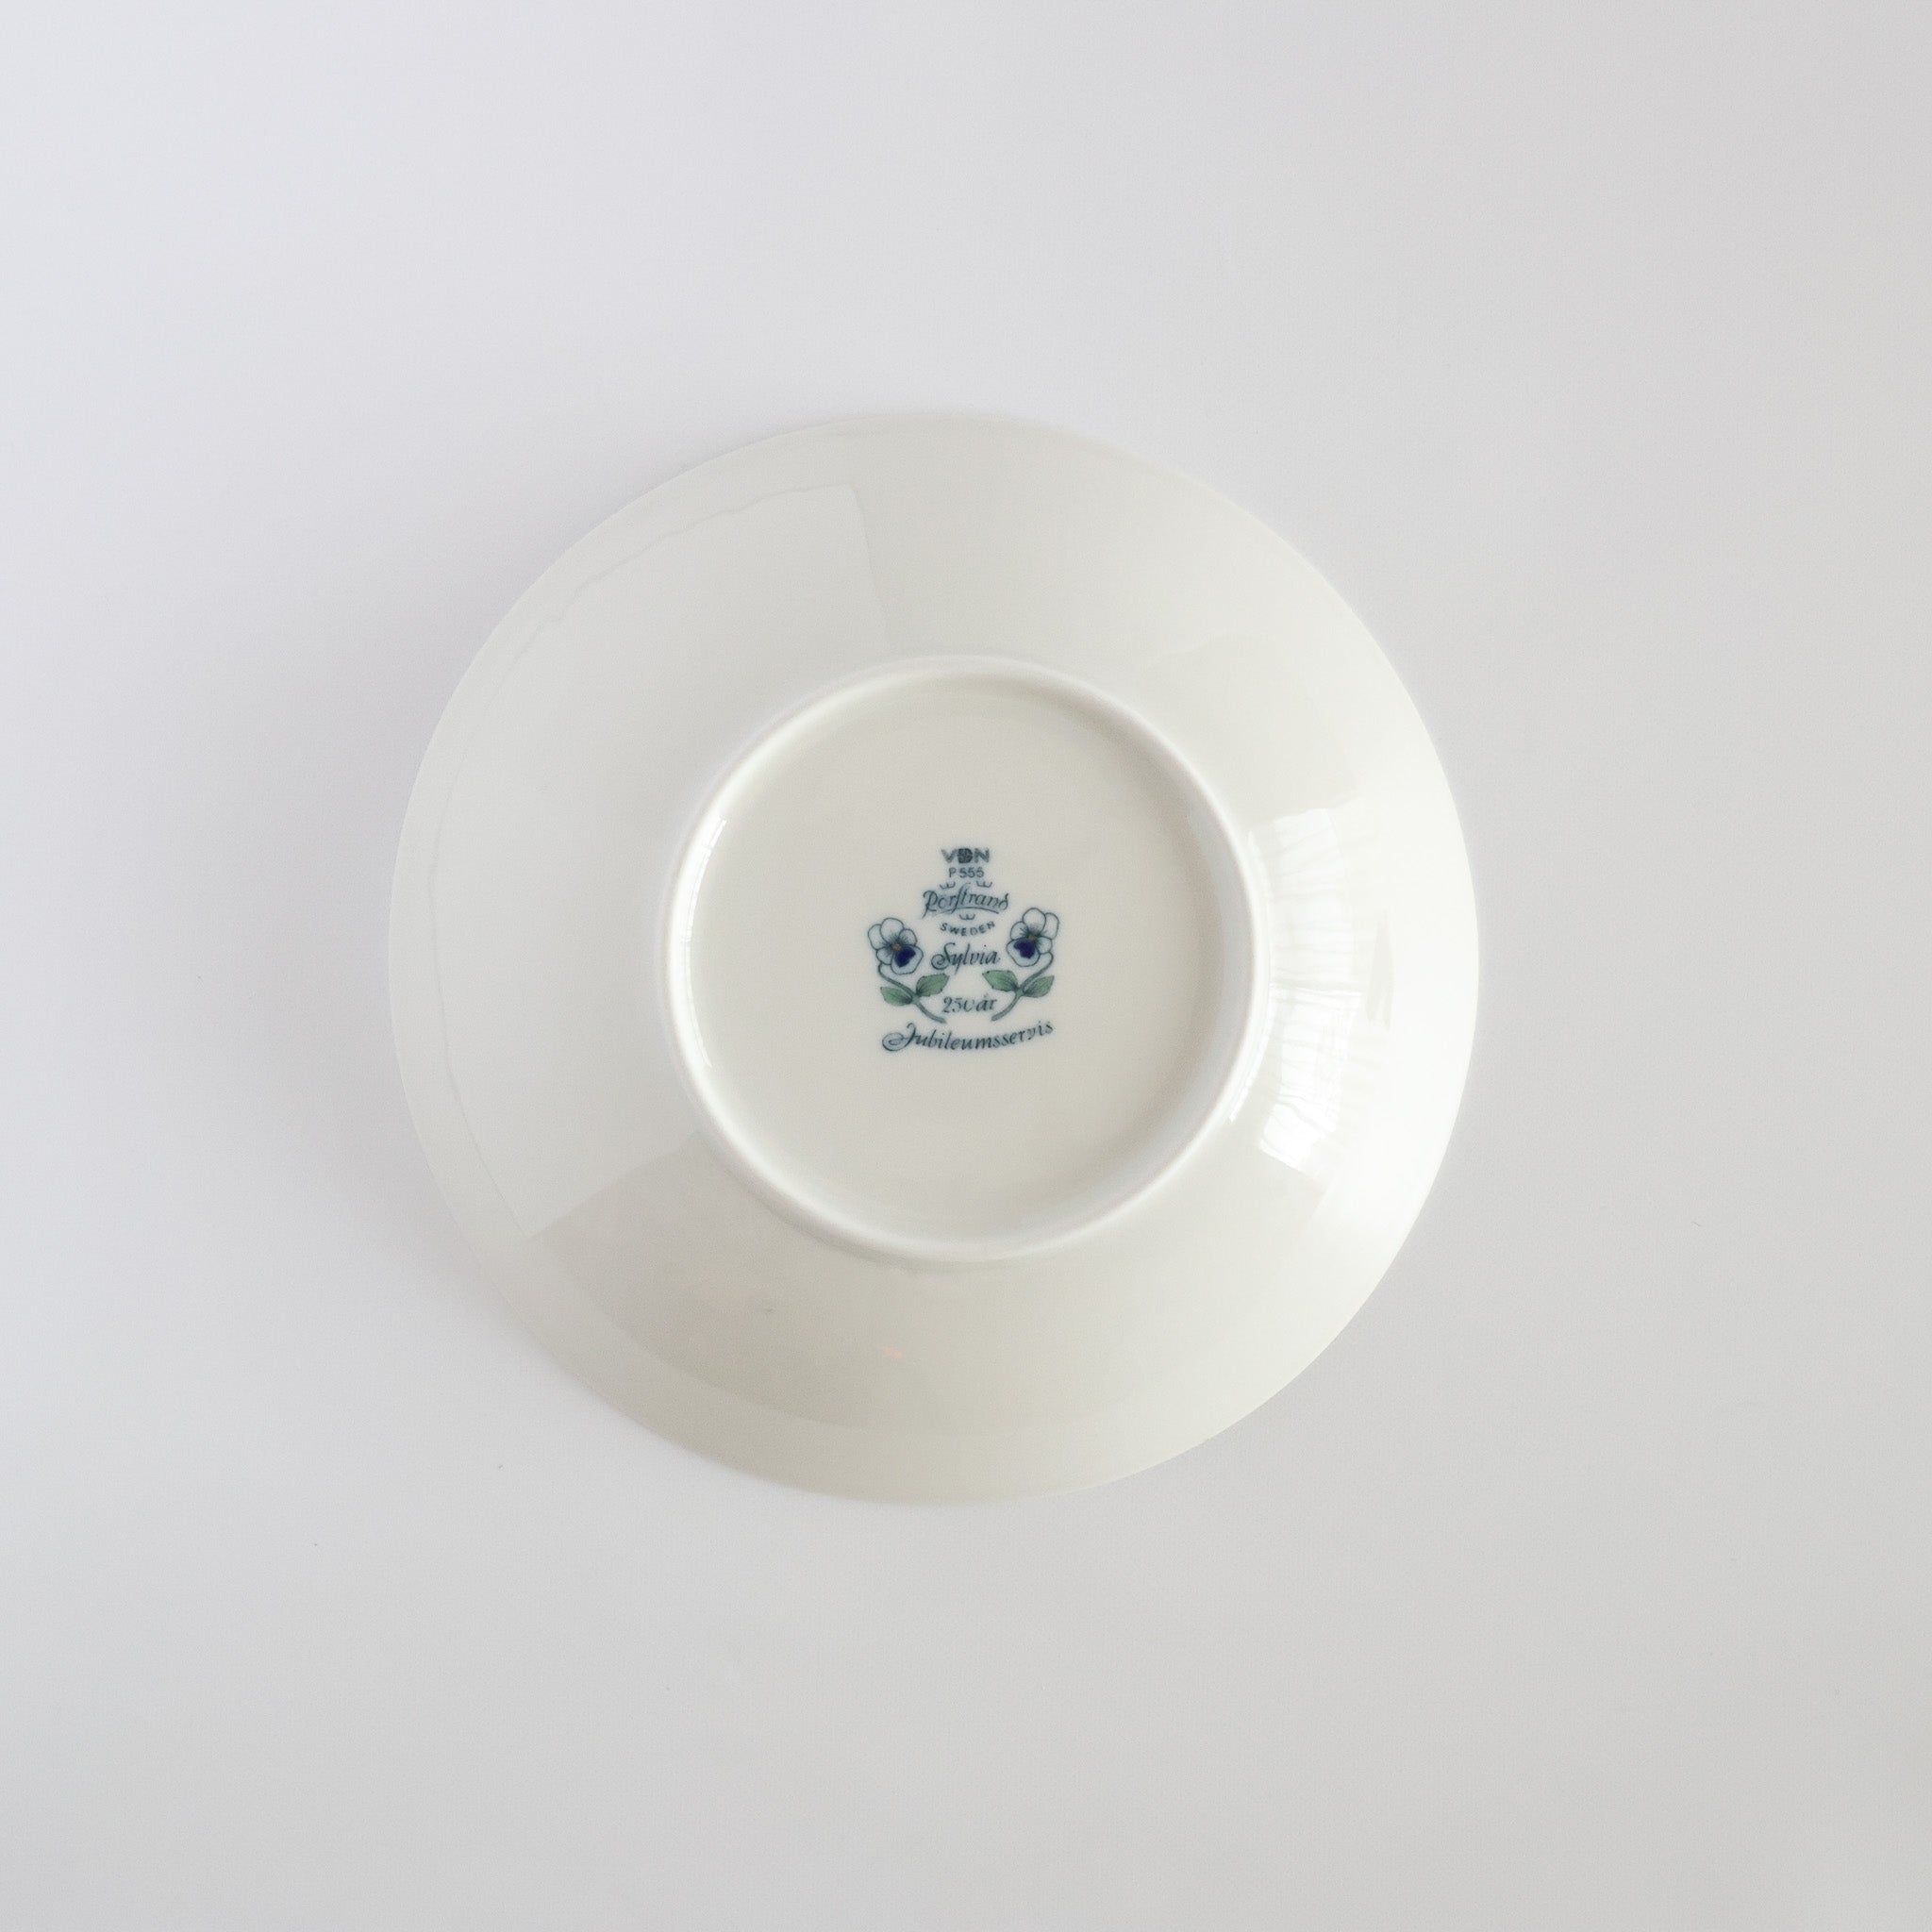 sylvia (シルビア) bowl 20.0cm / Rörstrand (ロールストランド 